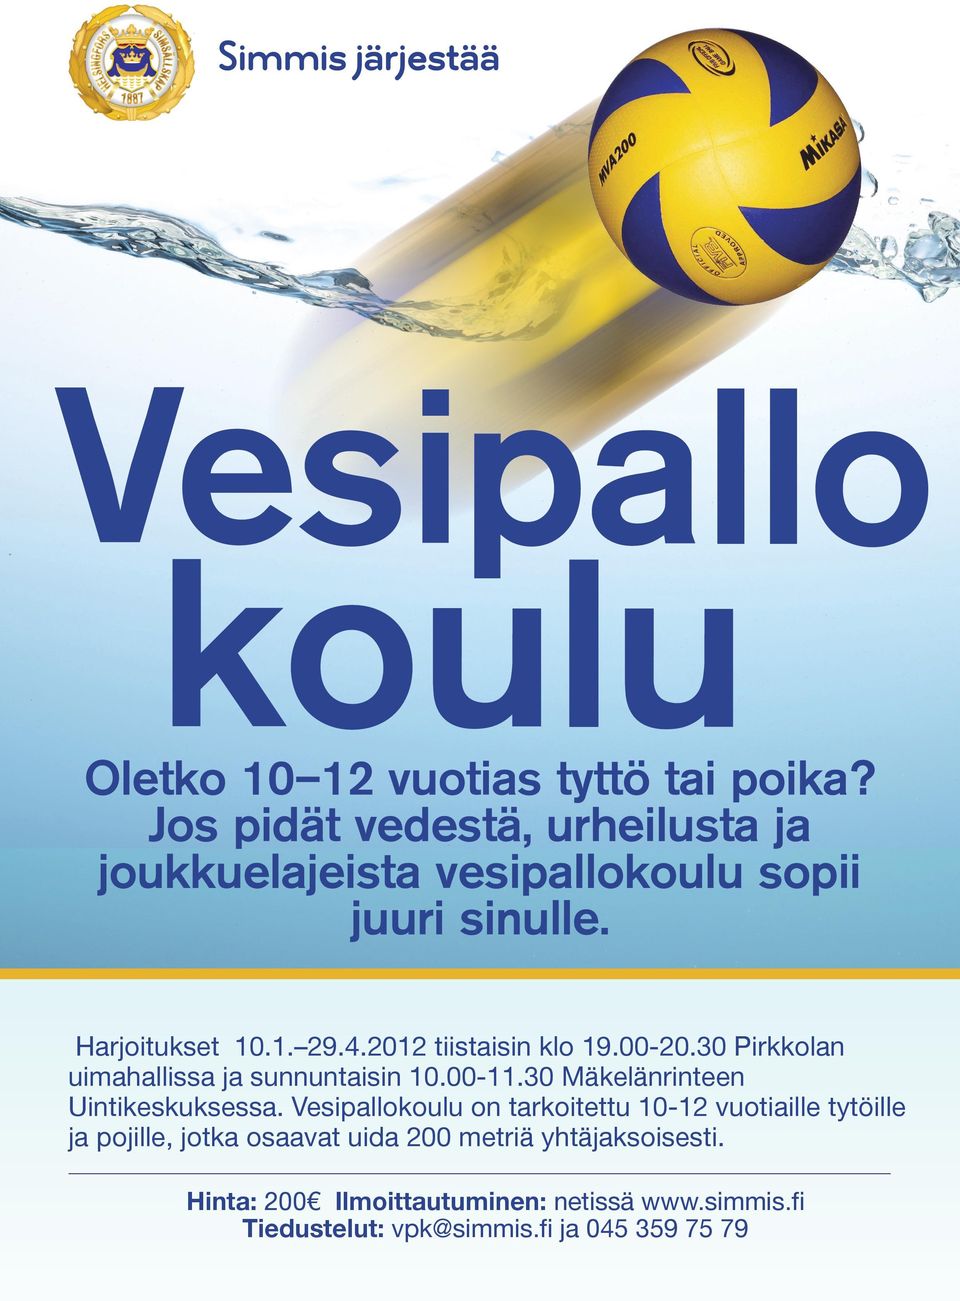 2012 tiistaisin klo 19.00-20.30 Pirkkolan uimahallissa ja sunnuntaisin 10.00-11.30 Mäkelänrinteen Uintikeskuksessa.